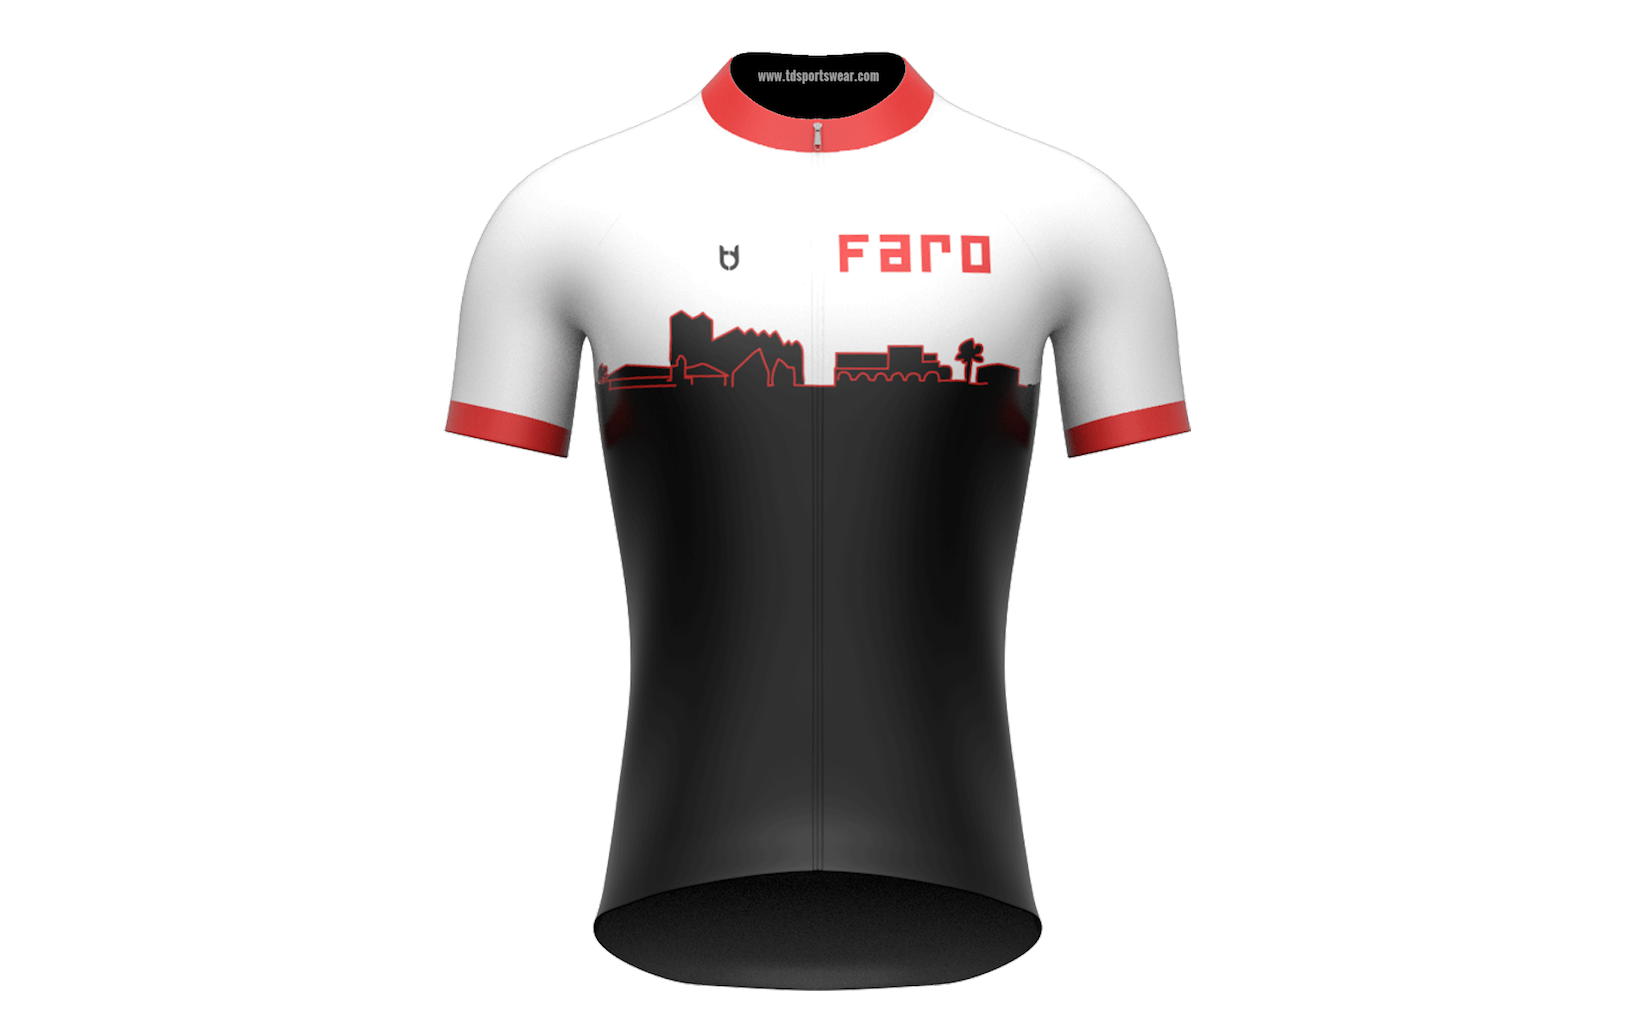 FARO architecten cycling jersey custom made TD sportswear